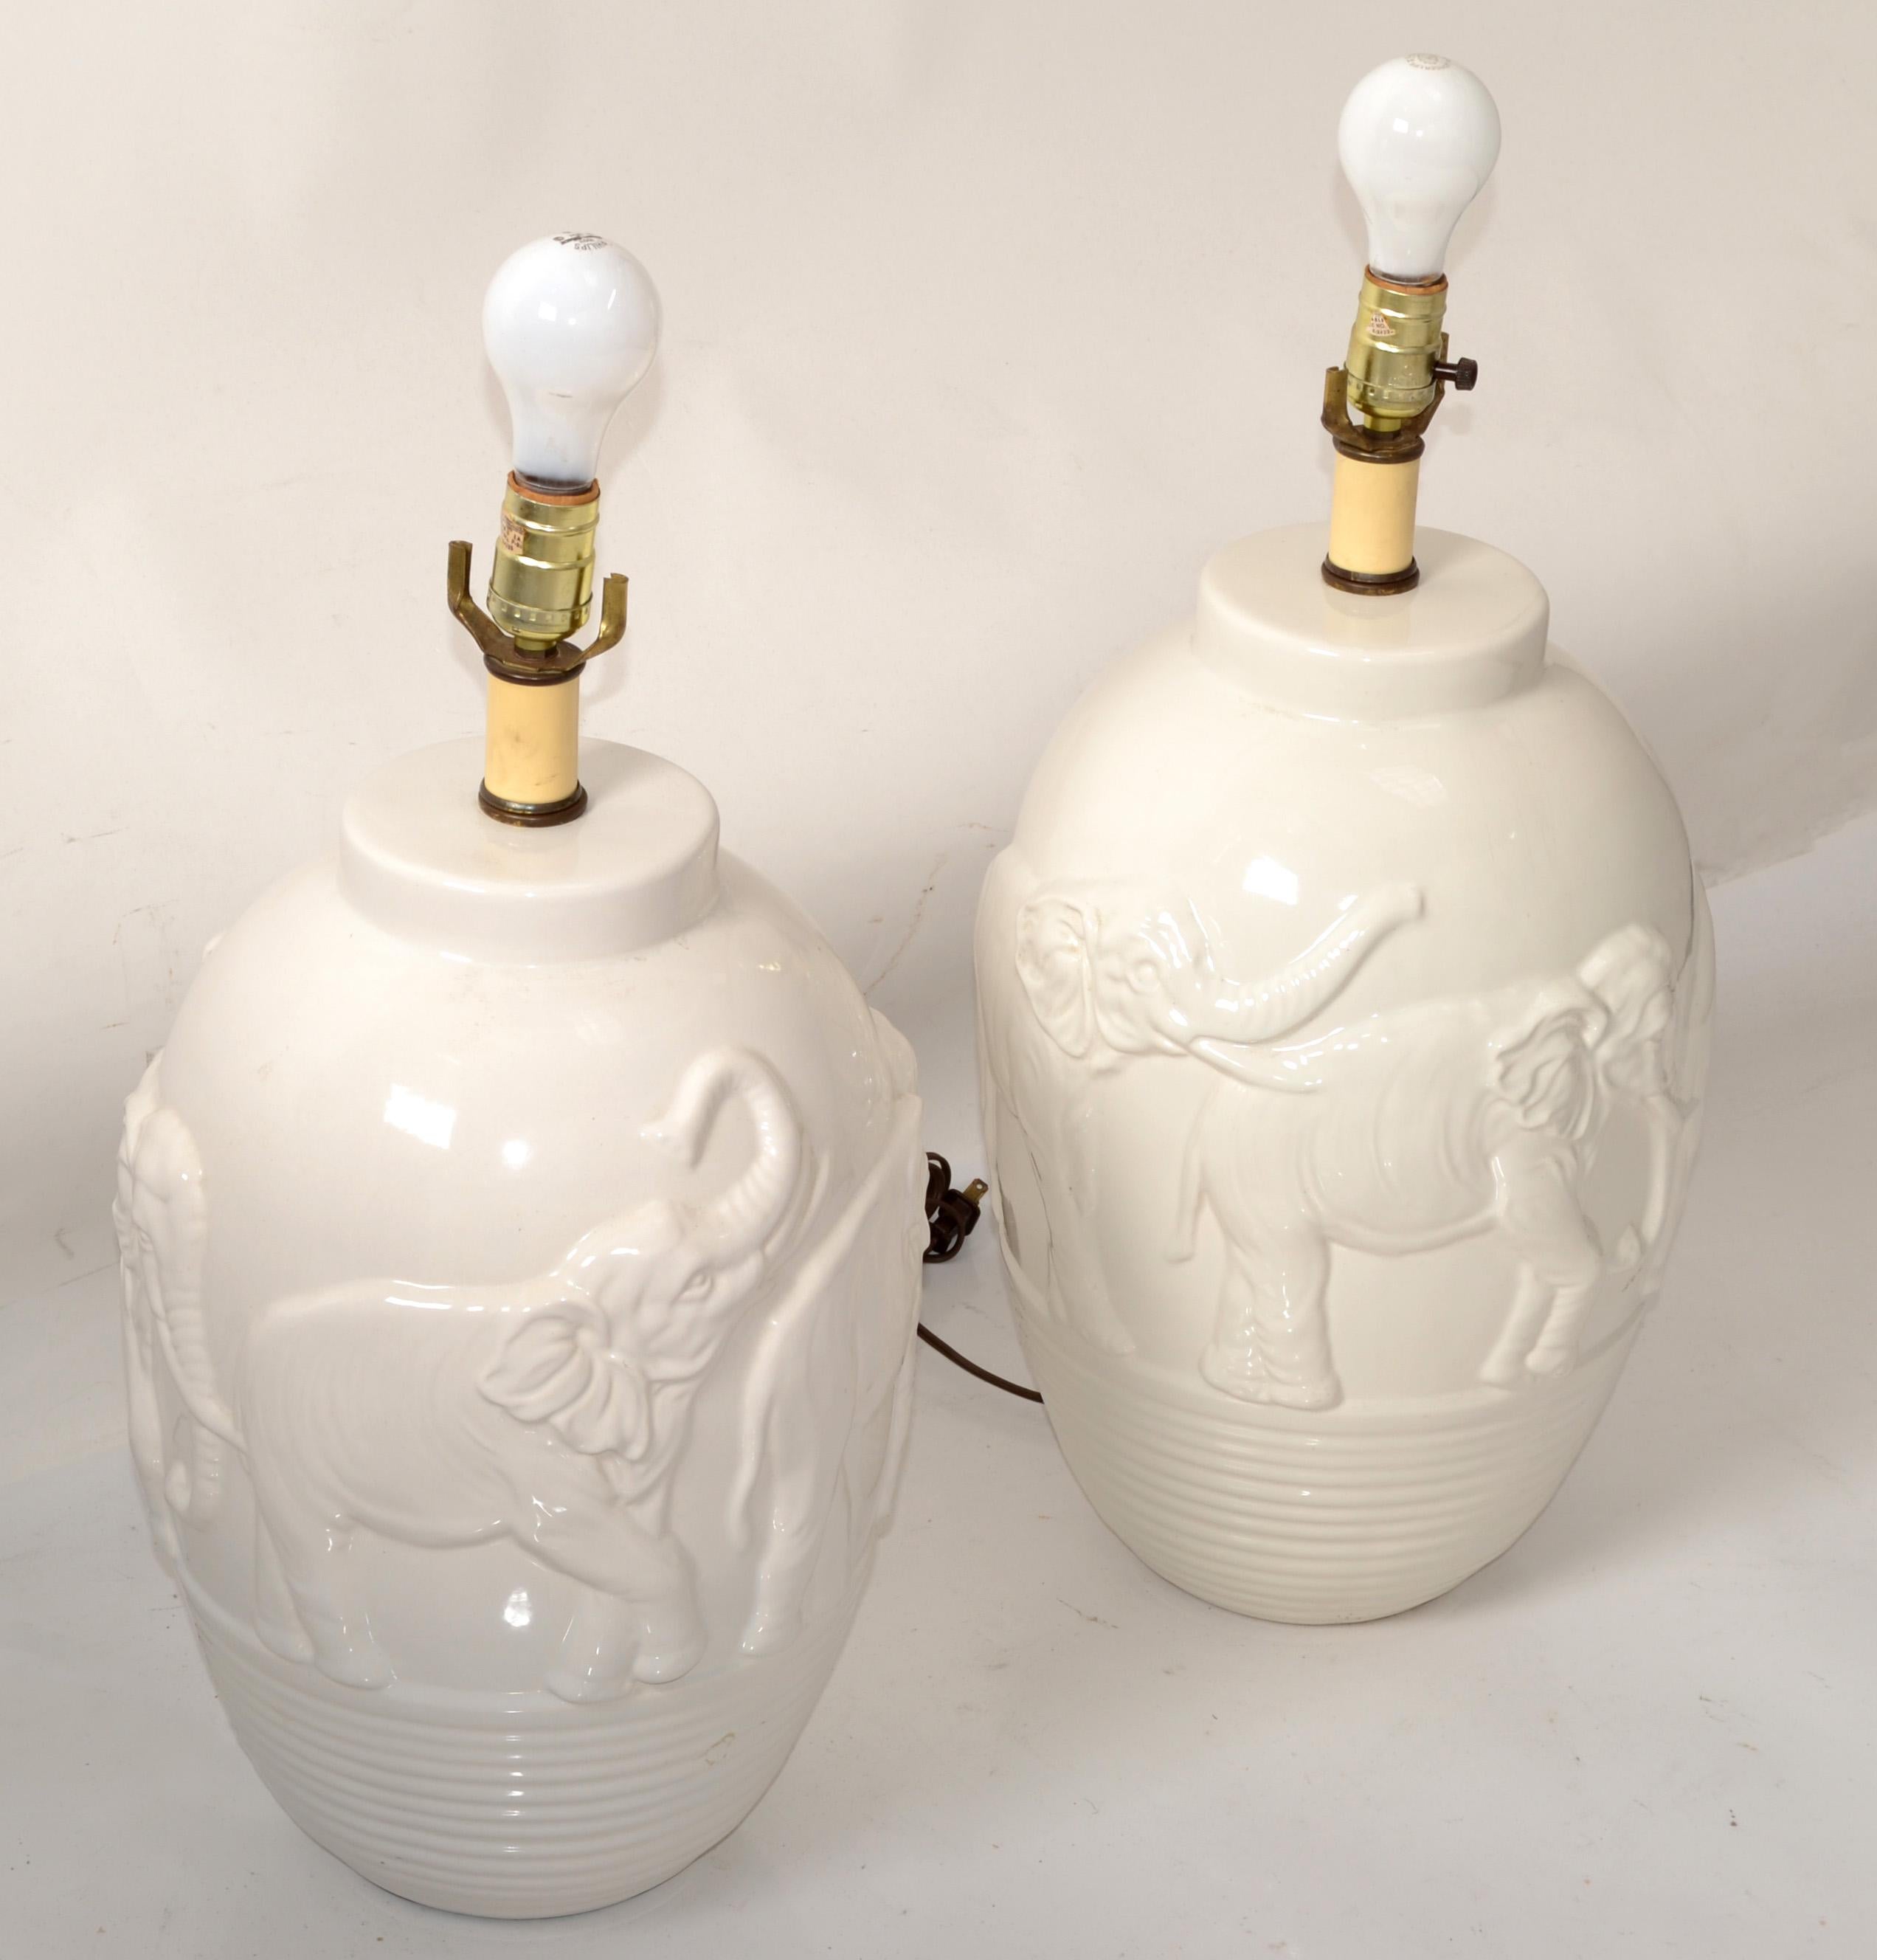 Paire de lampes de table en céramique émaillée blanc cassé de style Chinoiserie asiatique, avec des motifs d'éléphants en 2D et une base profondément incisée.
Homologuée UL, chaque lampe est compatible avec une ampoule ordinaire ou LED.
Pas de